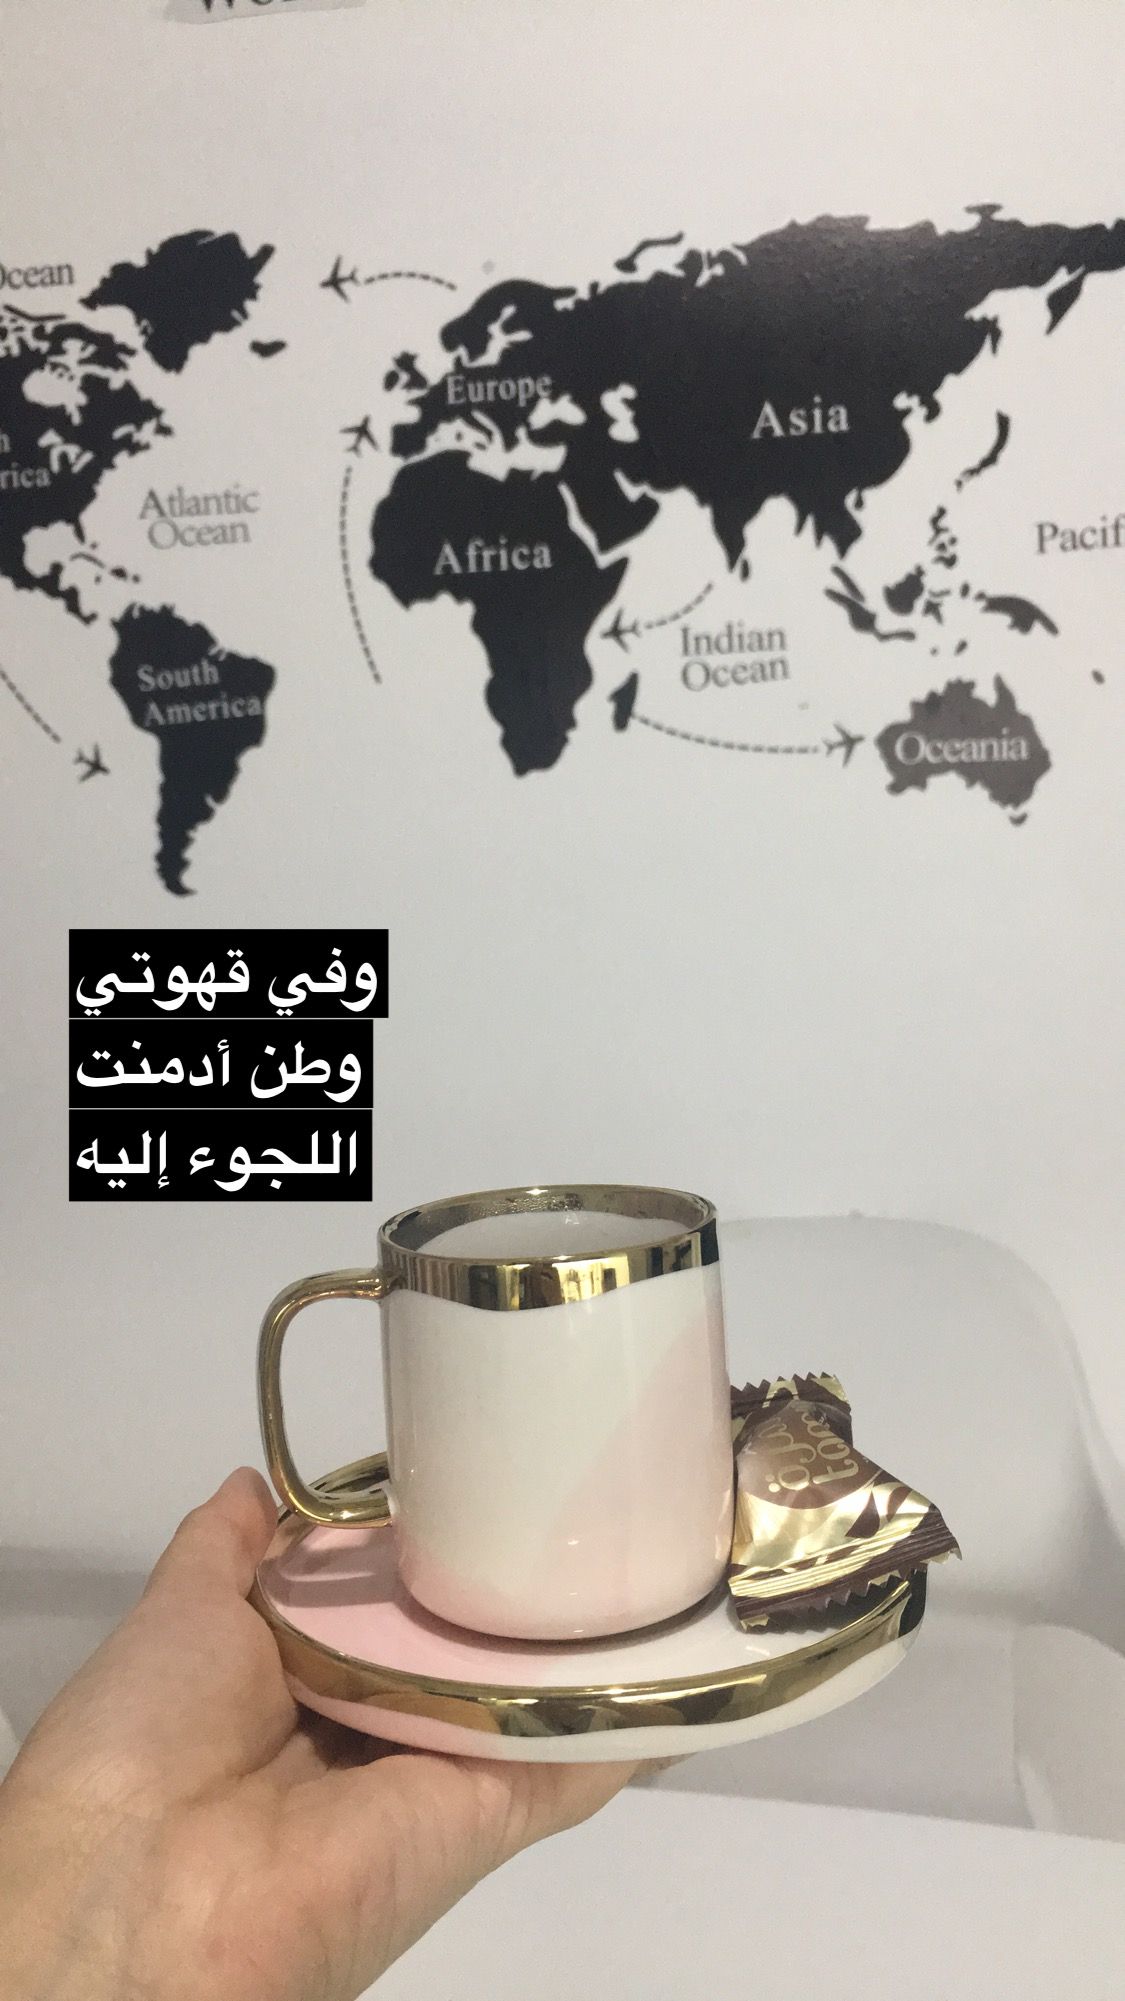 10 عبارات عن القهوة بالإنجليزي مقتطفات رائعة مع ترجمتها بالعربية